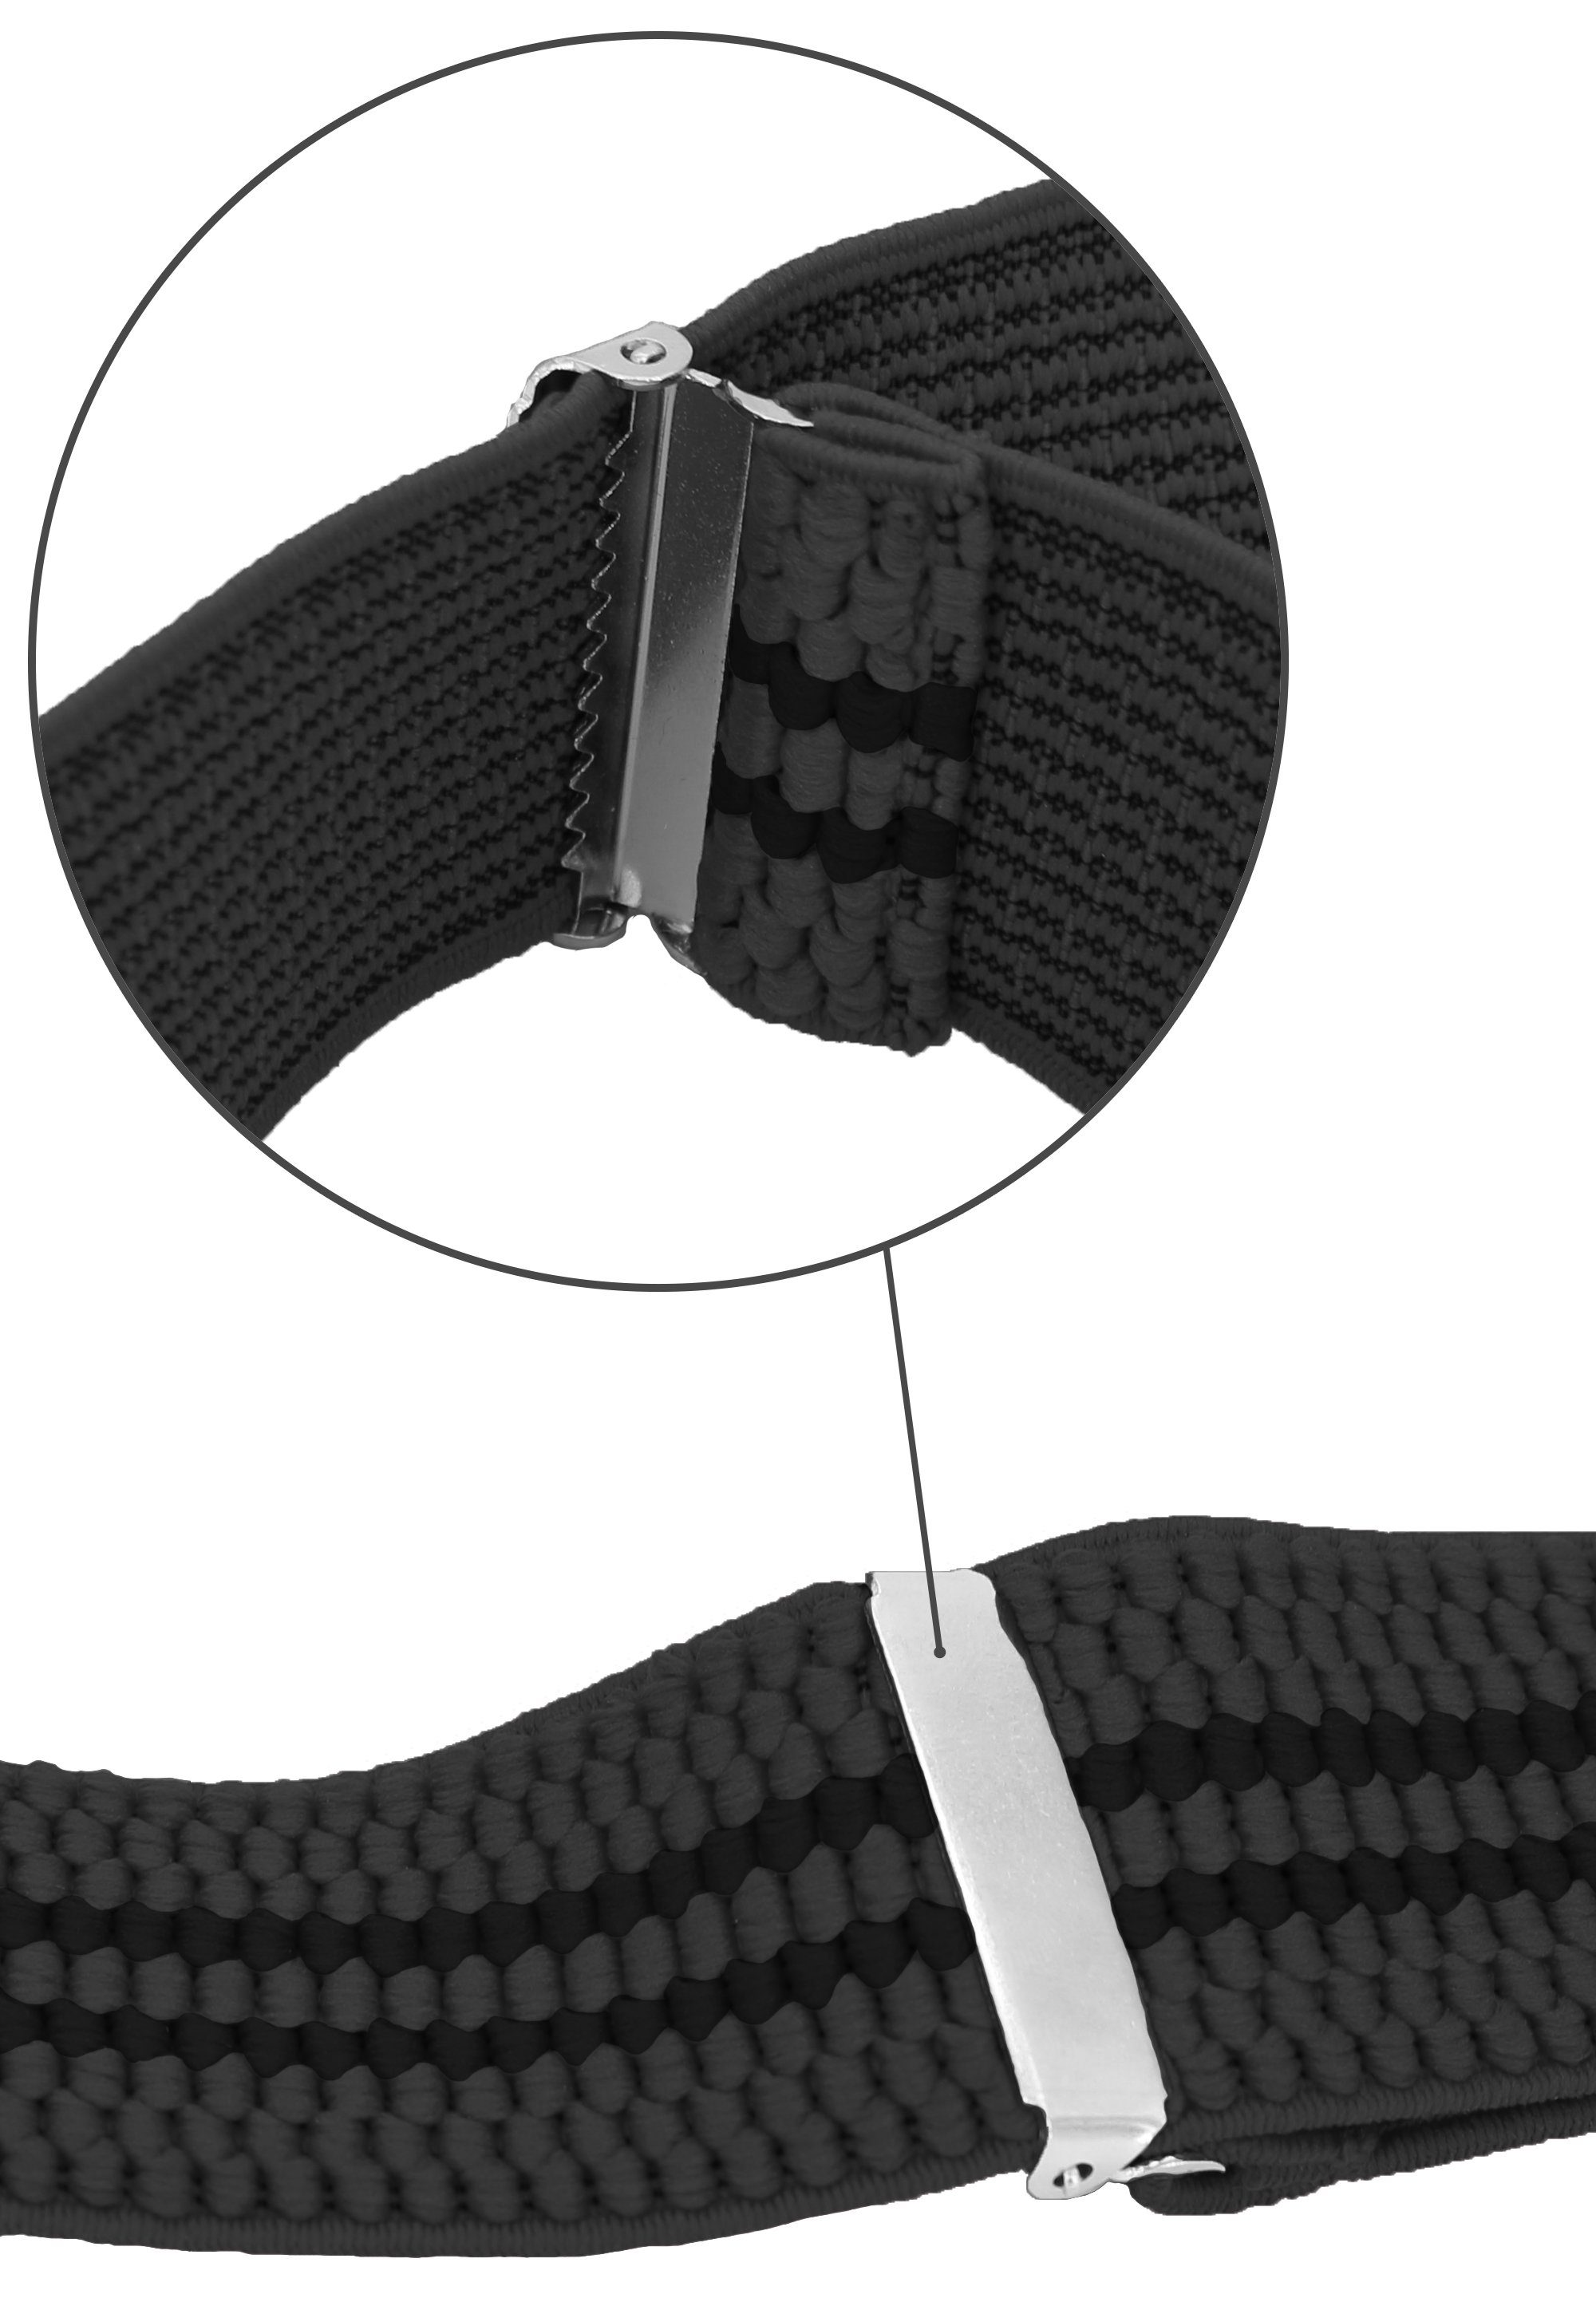 Breites Grau Clipverschluss, schwarzen verstellbar mit X-Design Streifen 4cm Fabio Farini starken Hosenträger (schwarze Streifen) mit Grau extra